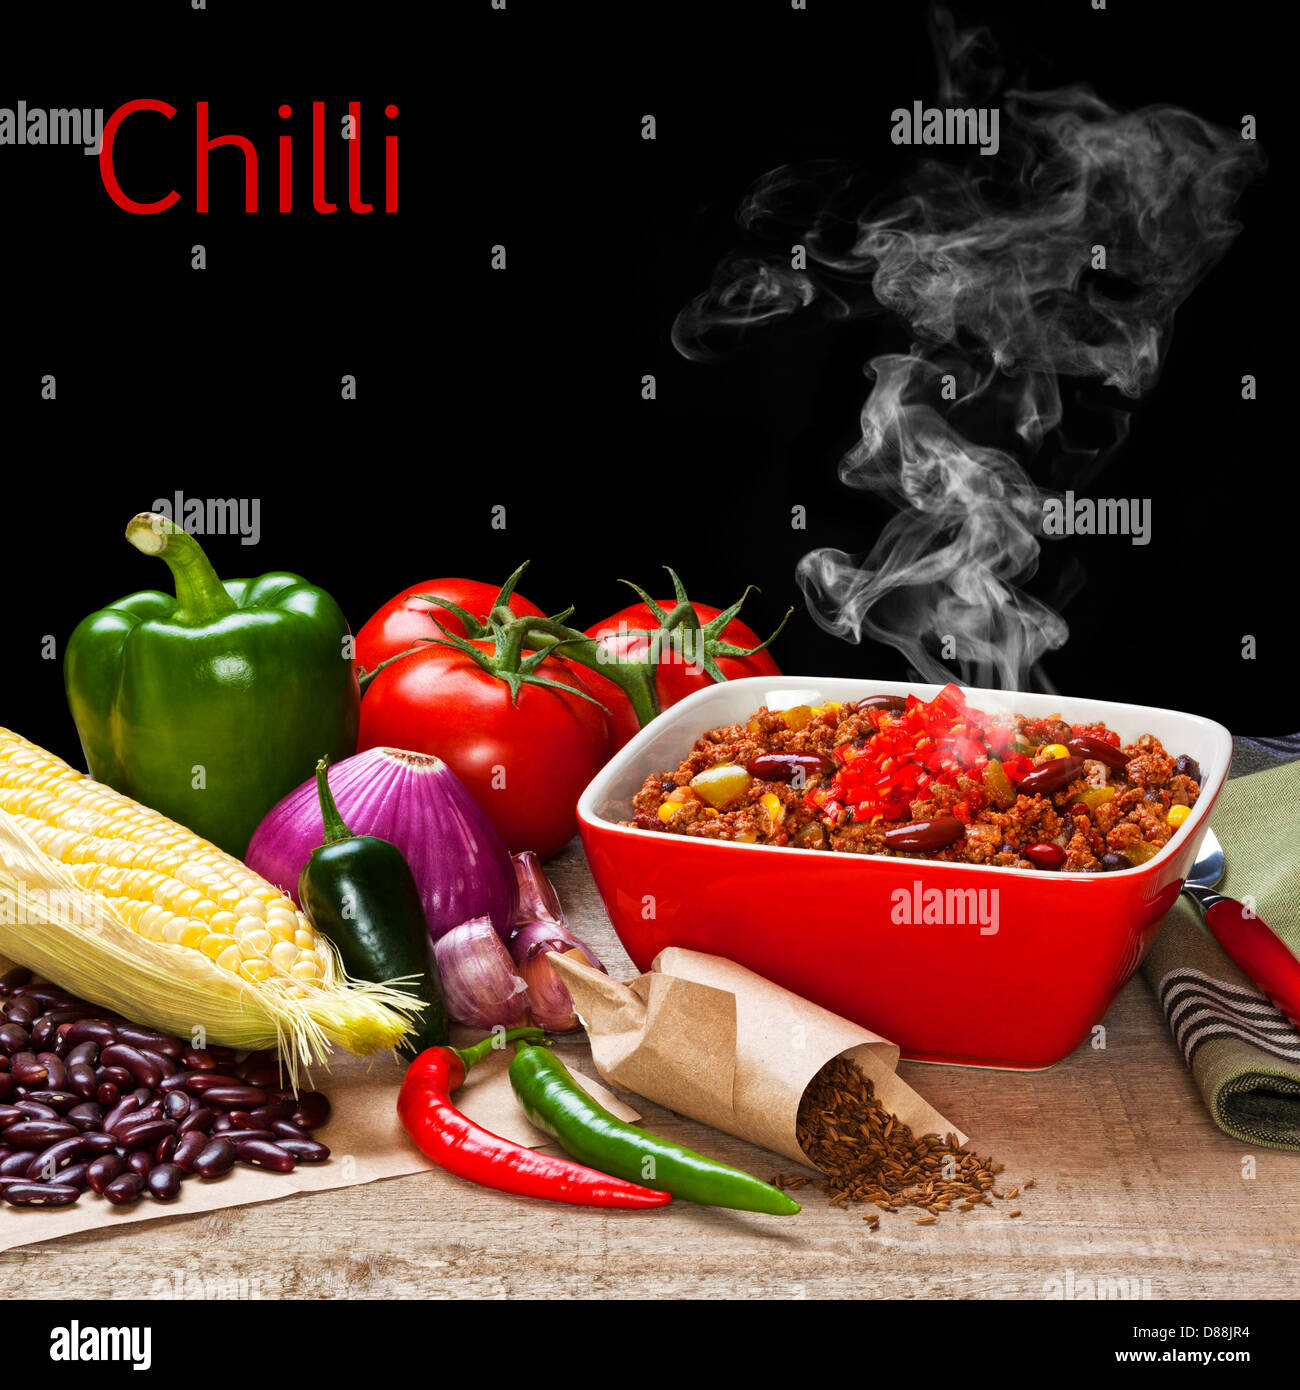 Chili y los ingredientes con steam rising - un tazón de Chile con sus ingredientes, visible y vapor. Foco de delante hacia atrás. Foto de stock